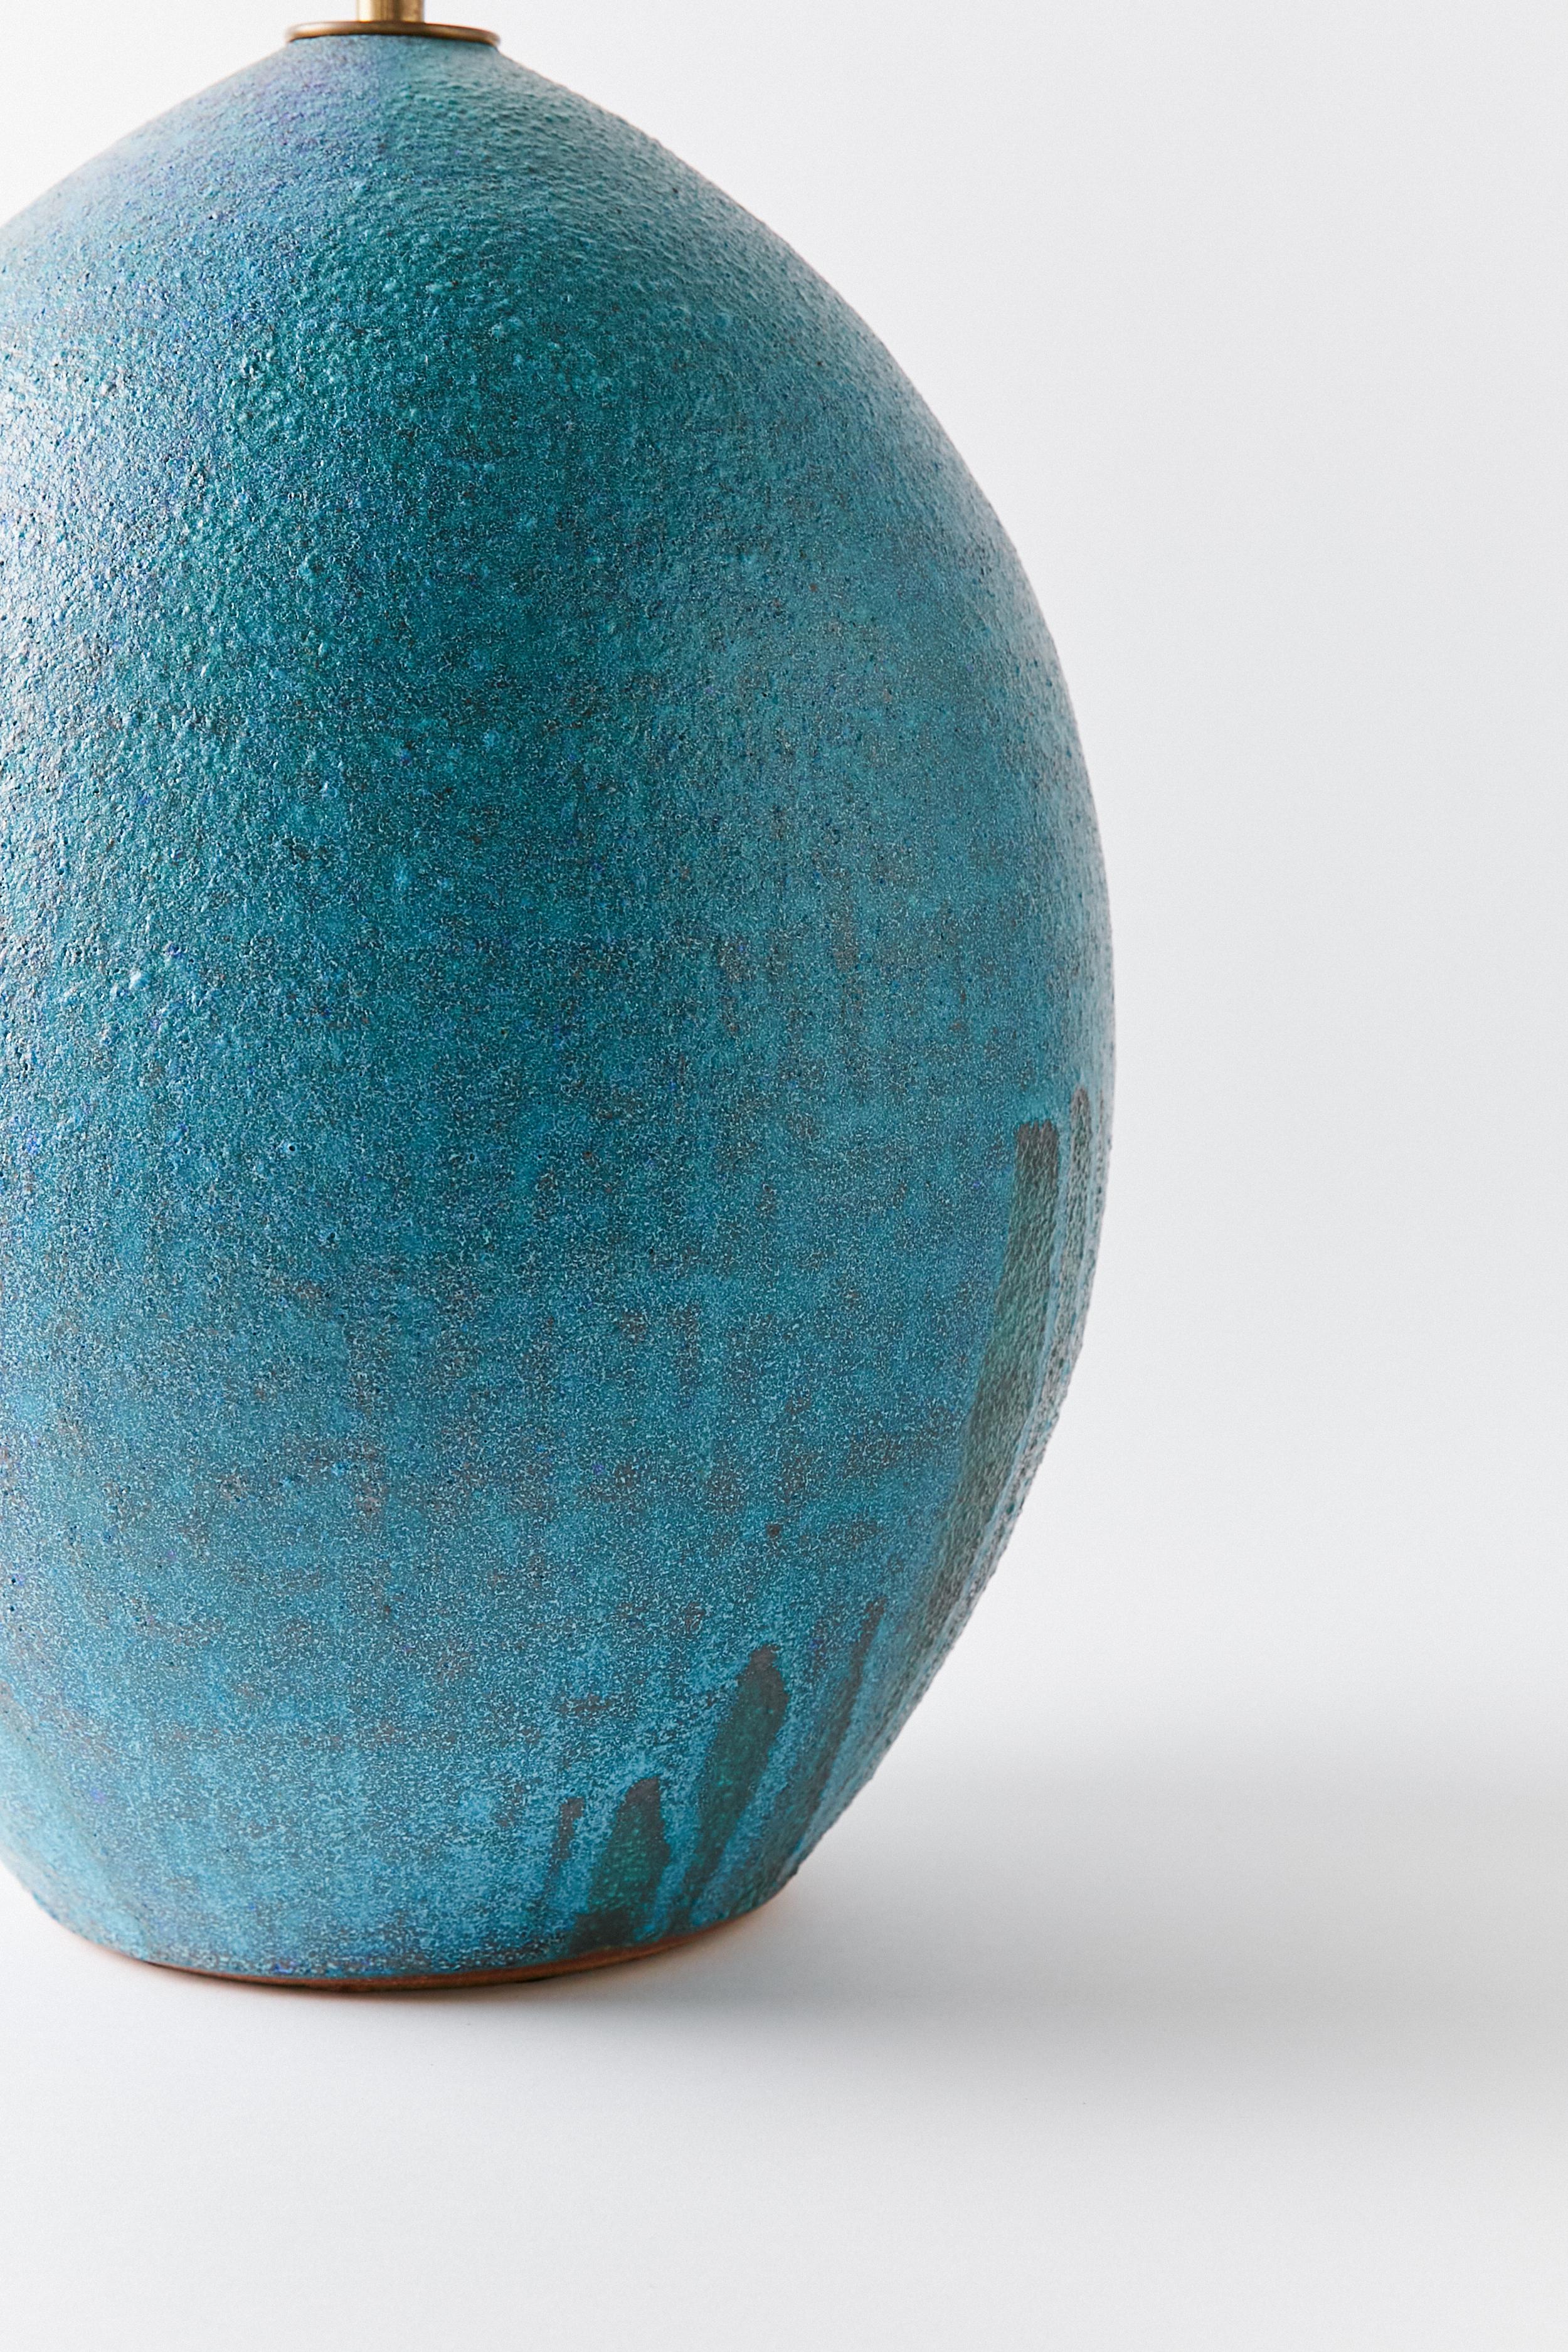 Contemporary Ceramic Blue Lamp